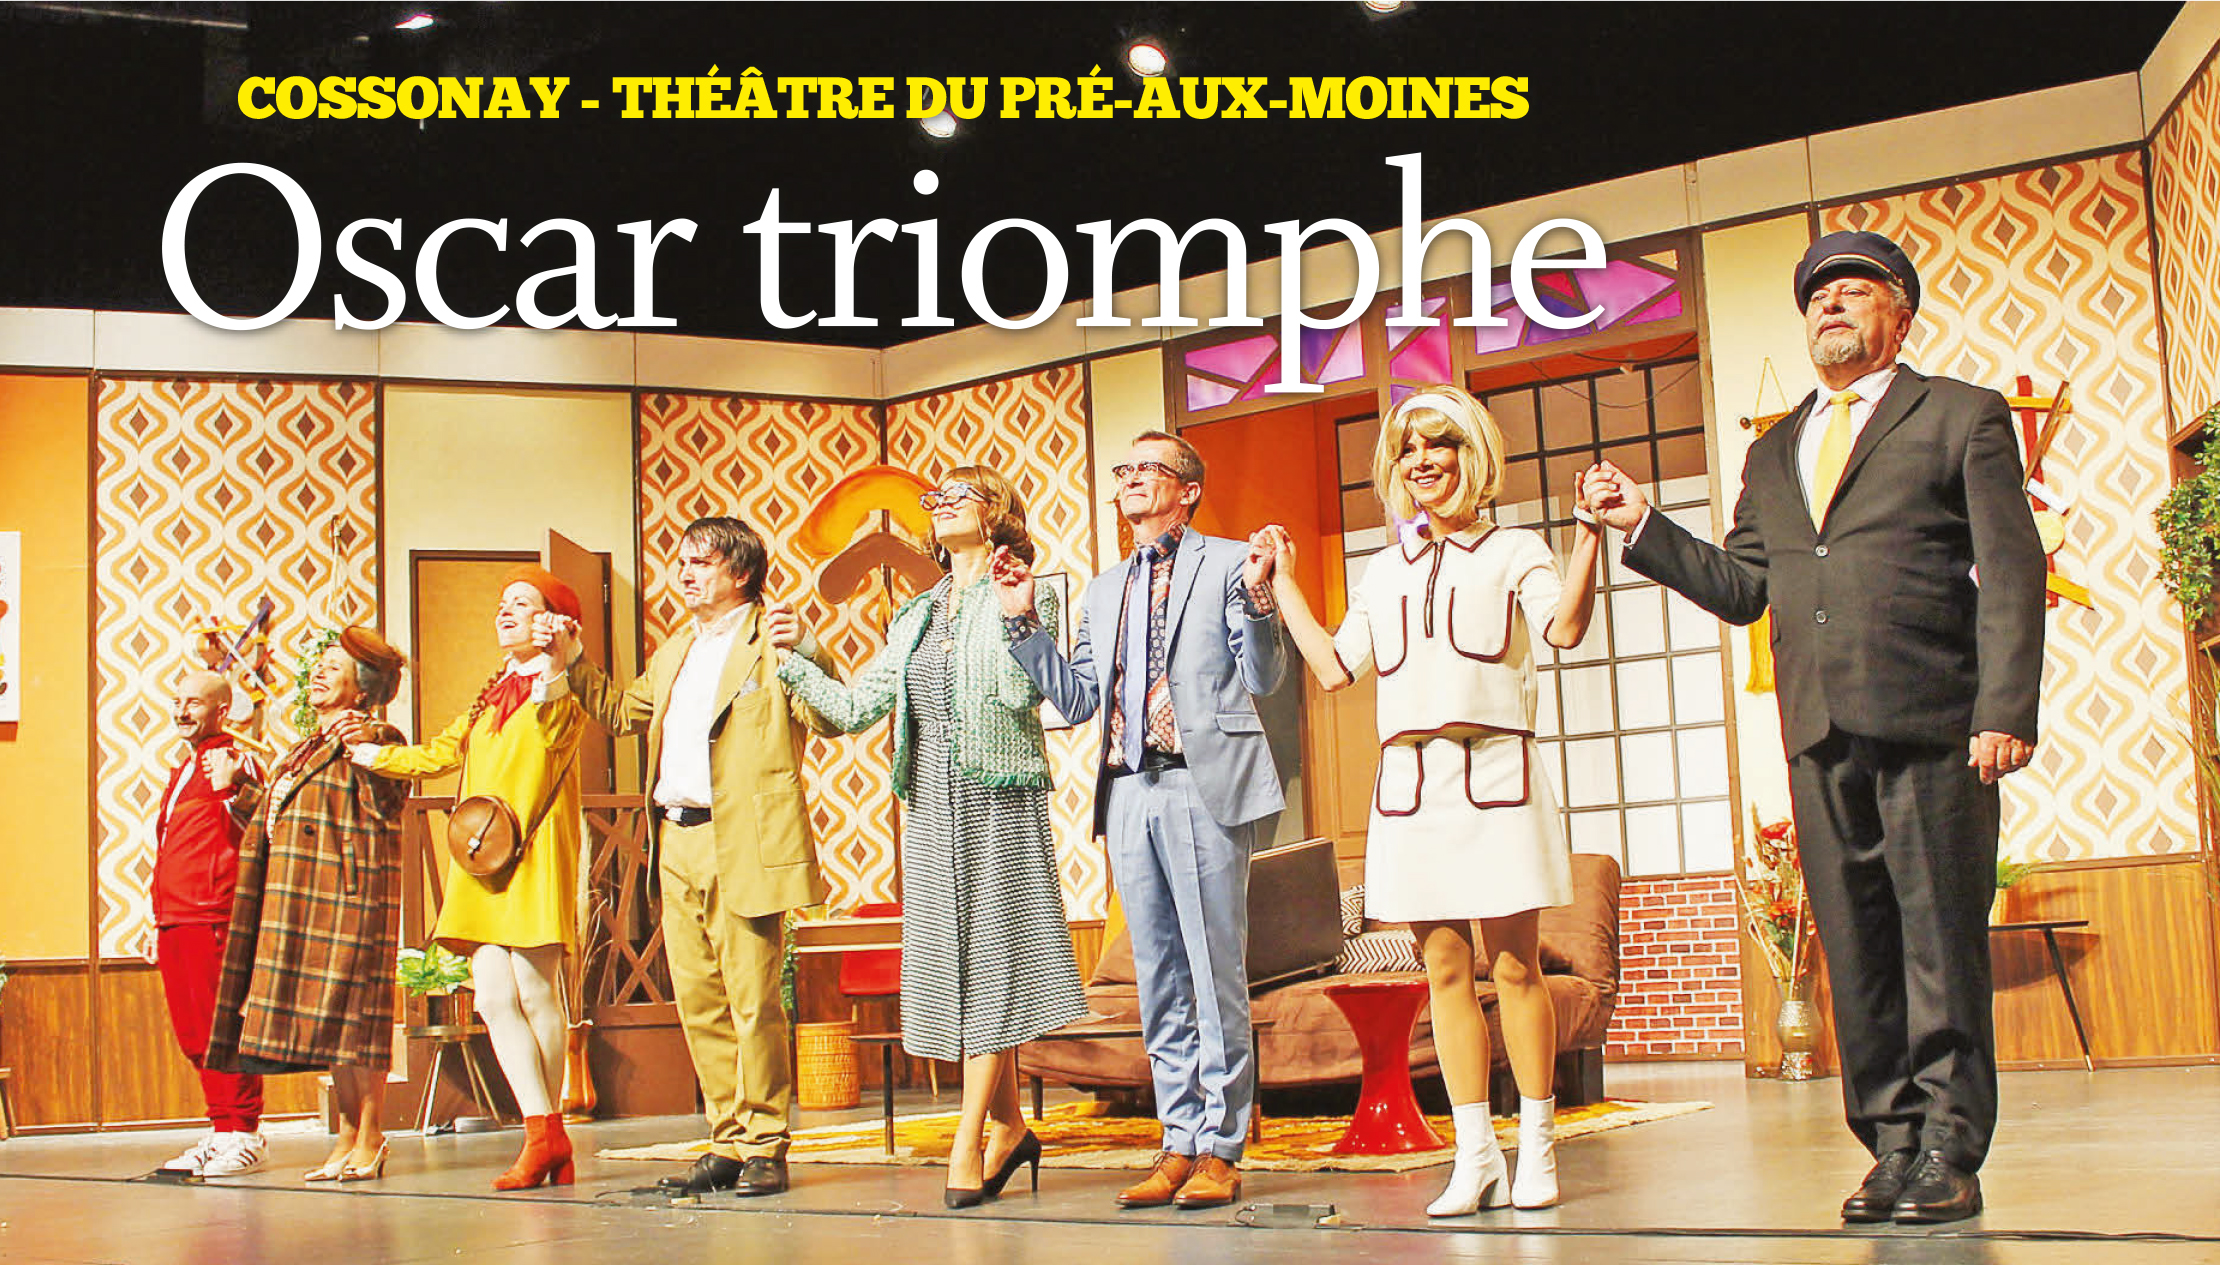 Cossonay – Théâtre du Pré-aux-Moines – Oscar triomphe